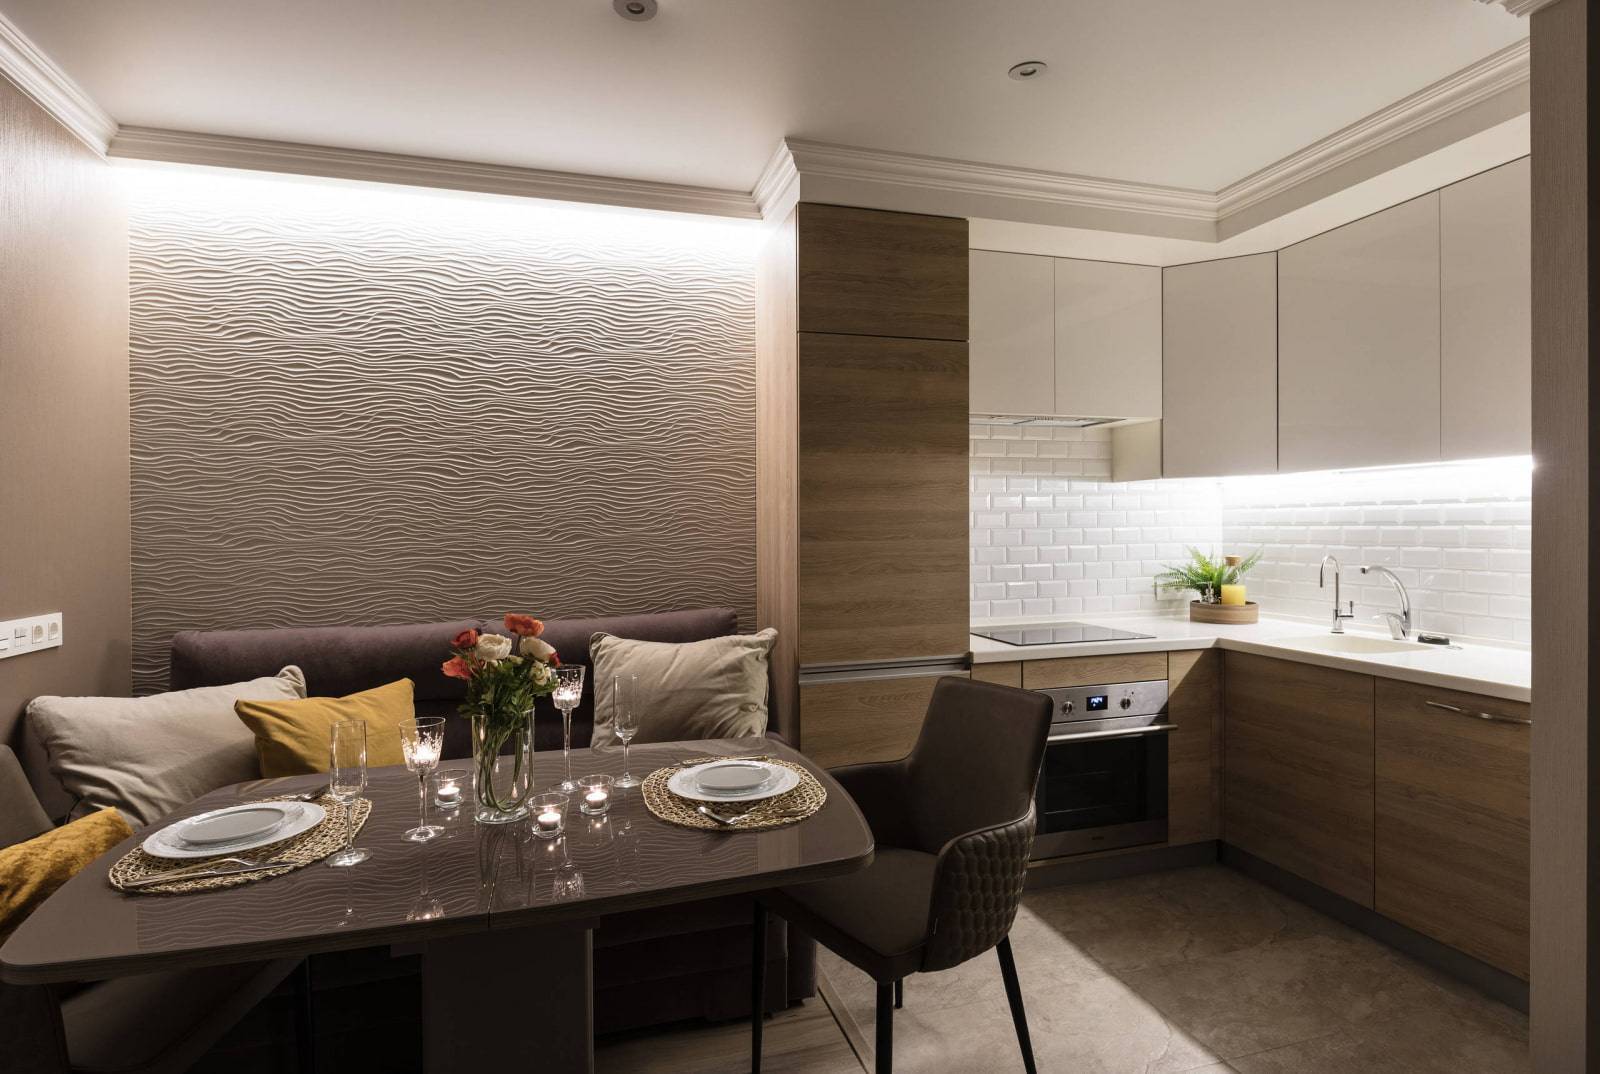 Как оформить кухонный интерьер в 15 кв. метров: выбор стиля, отделки и мебели